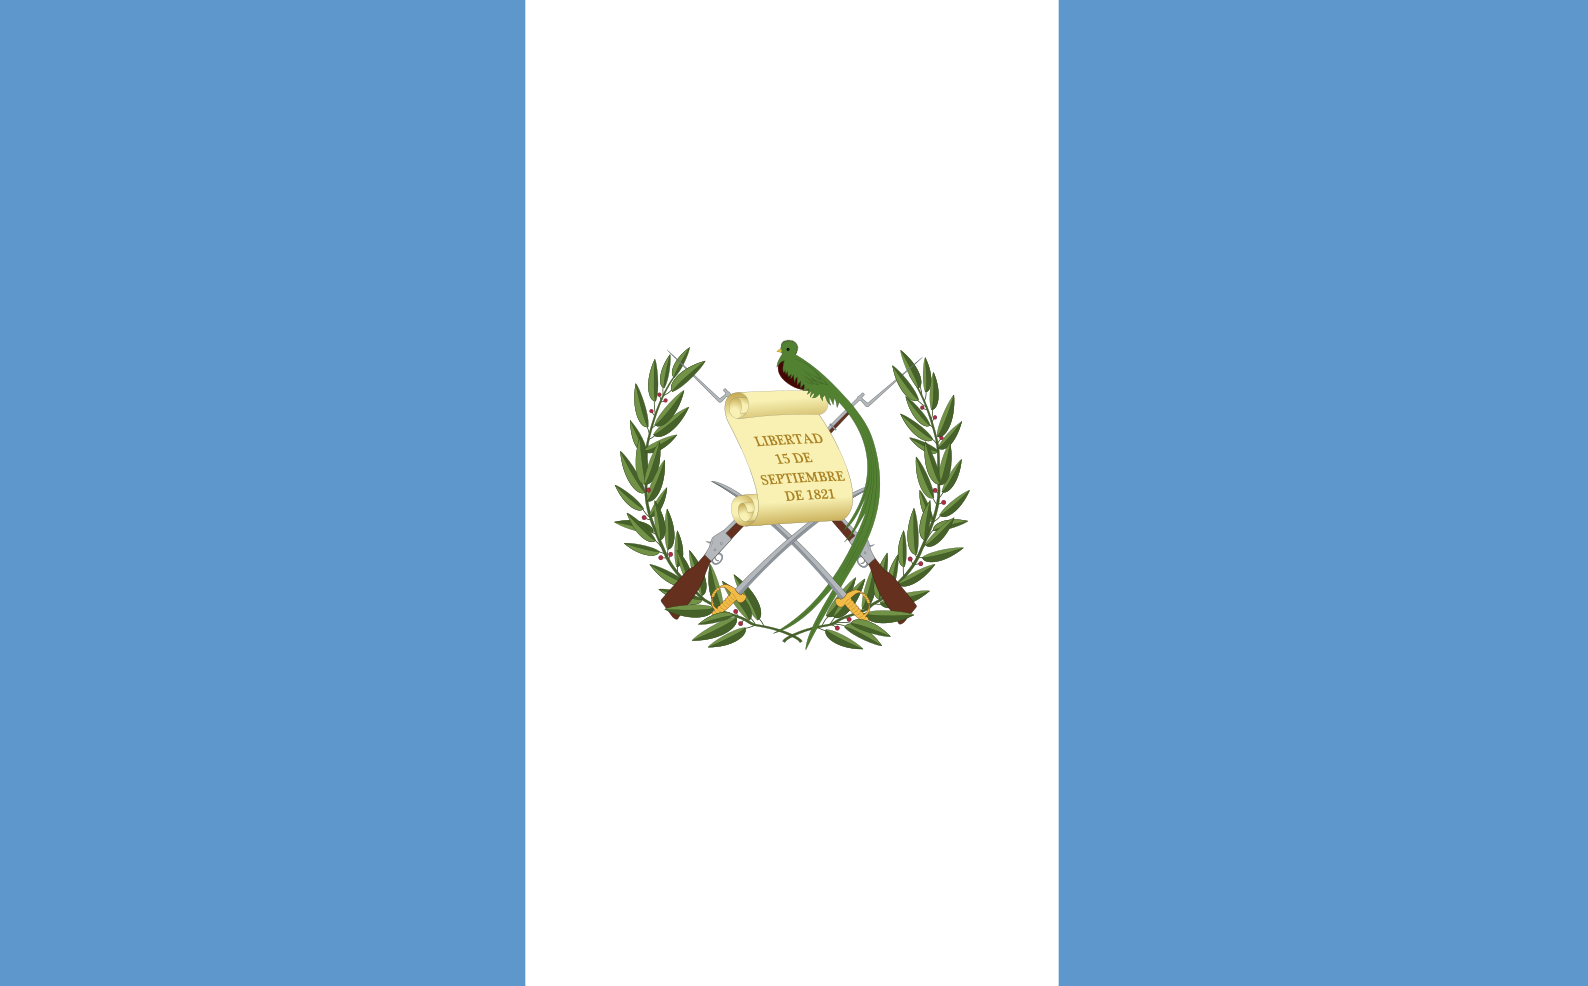 Guatemala - proxy